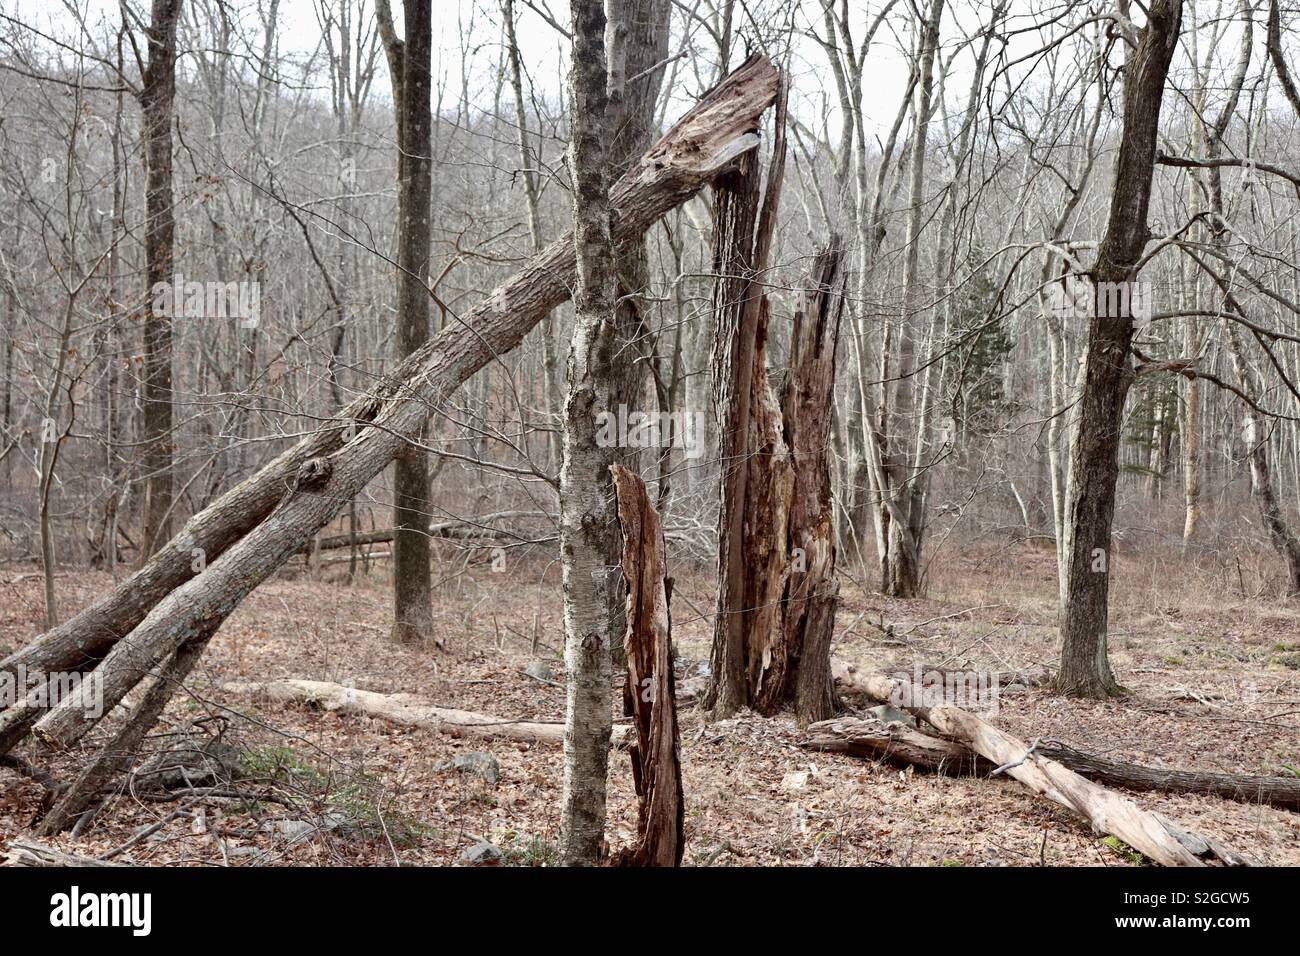 Damaged tree within winter woodland Stock Photo